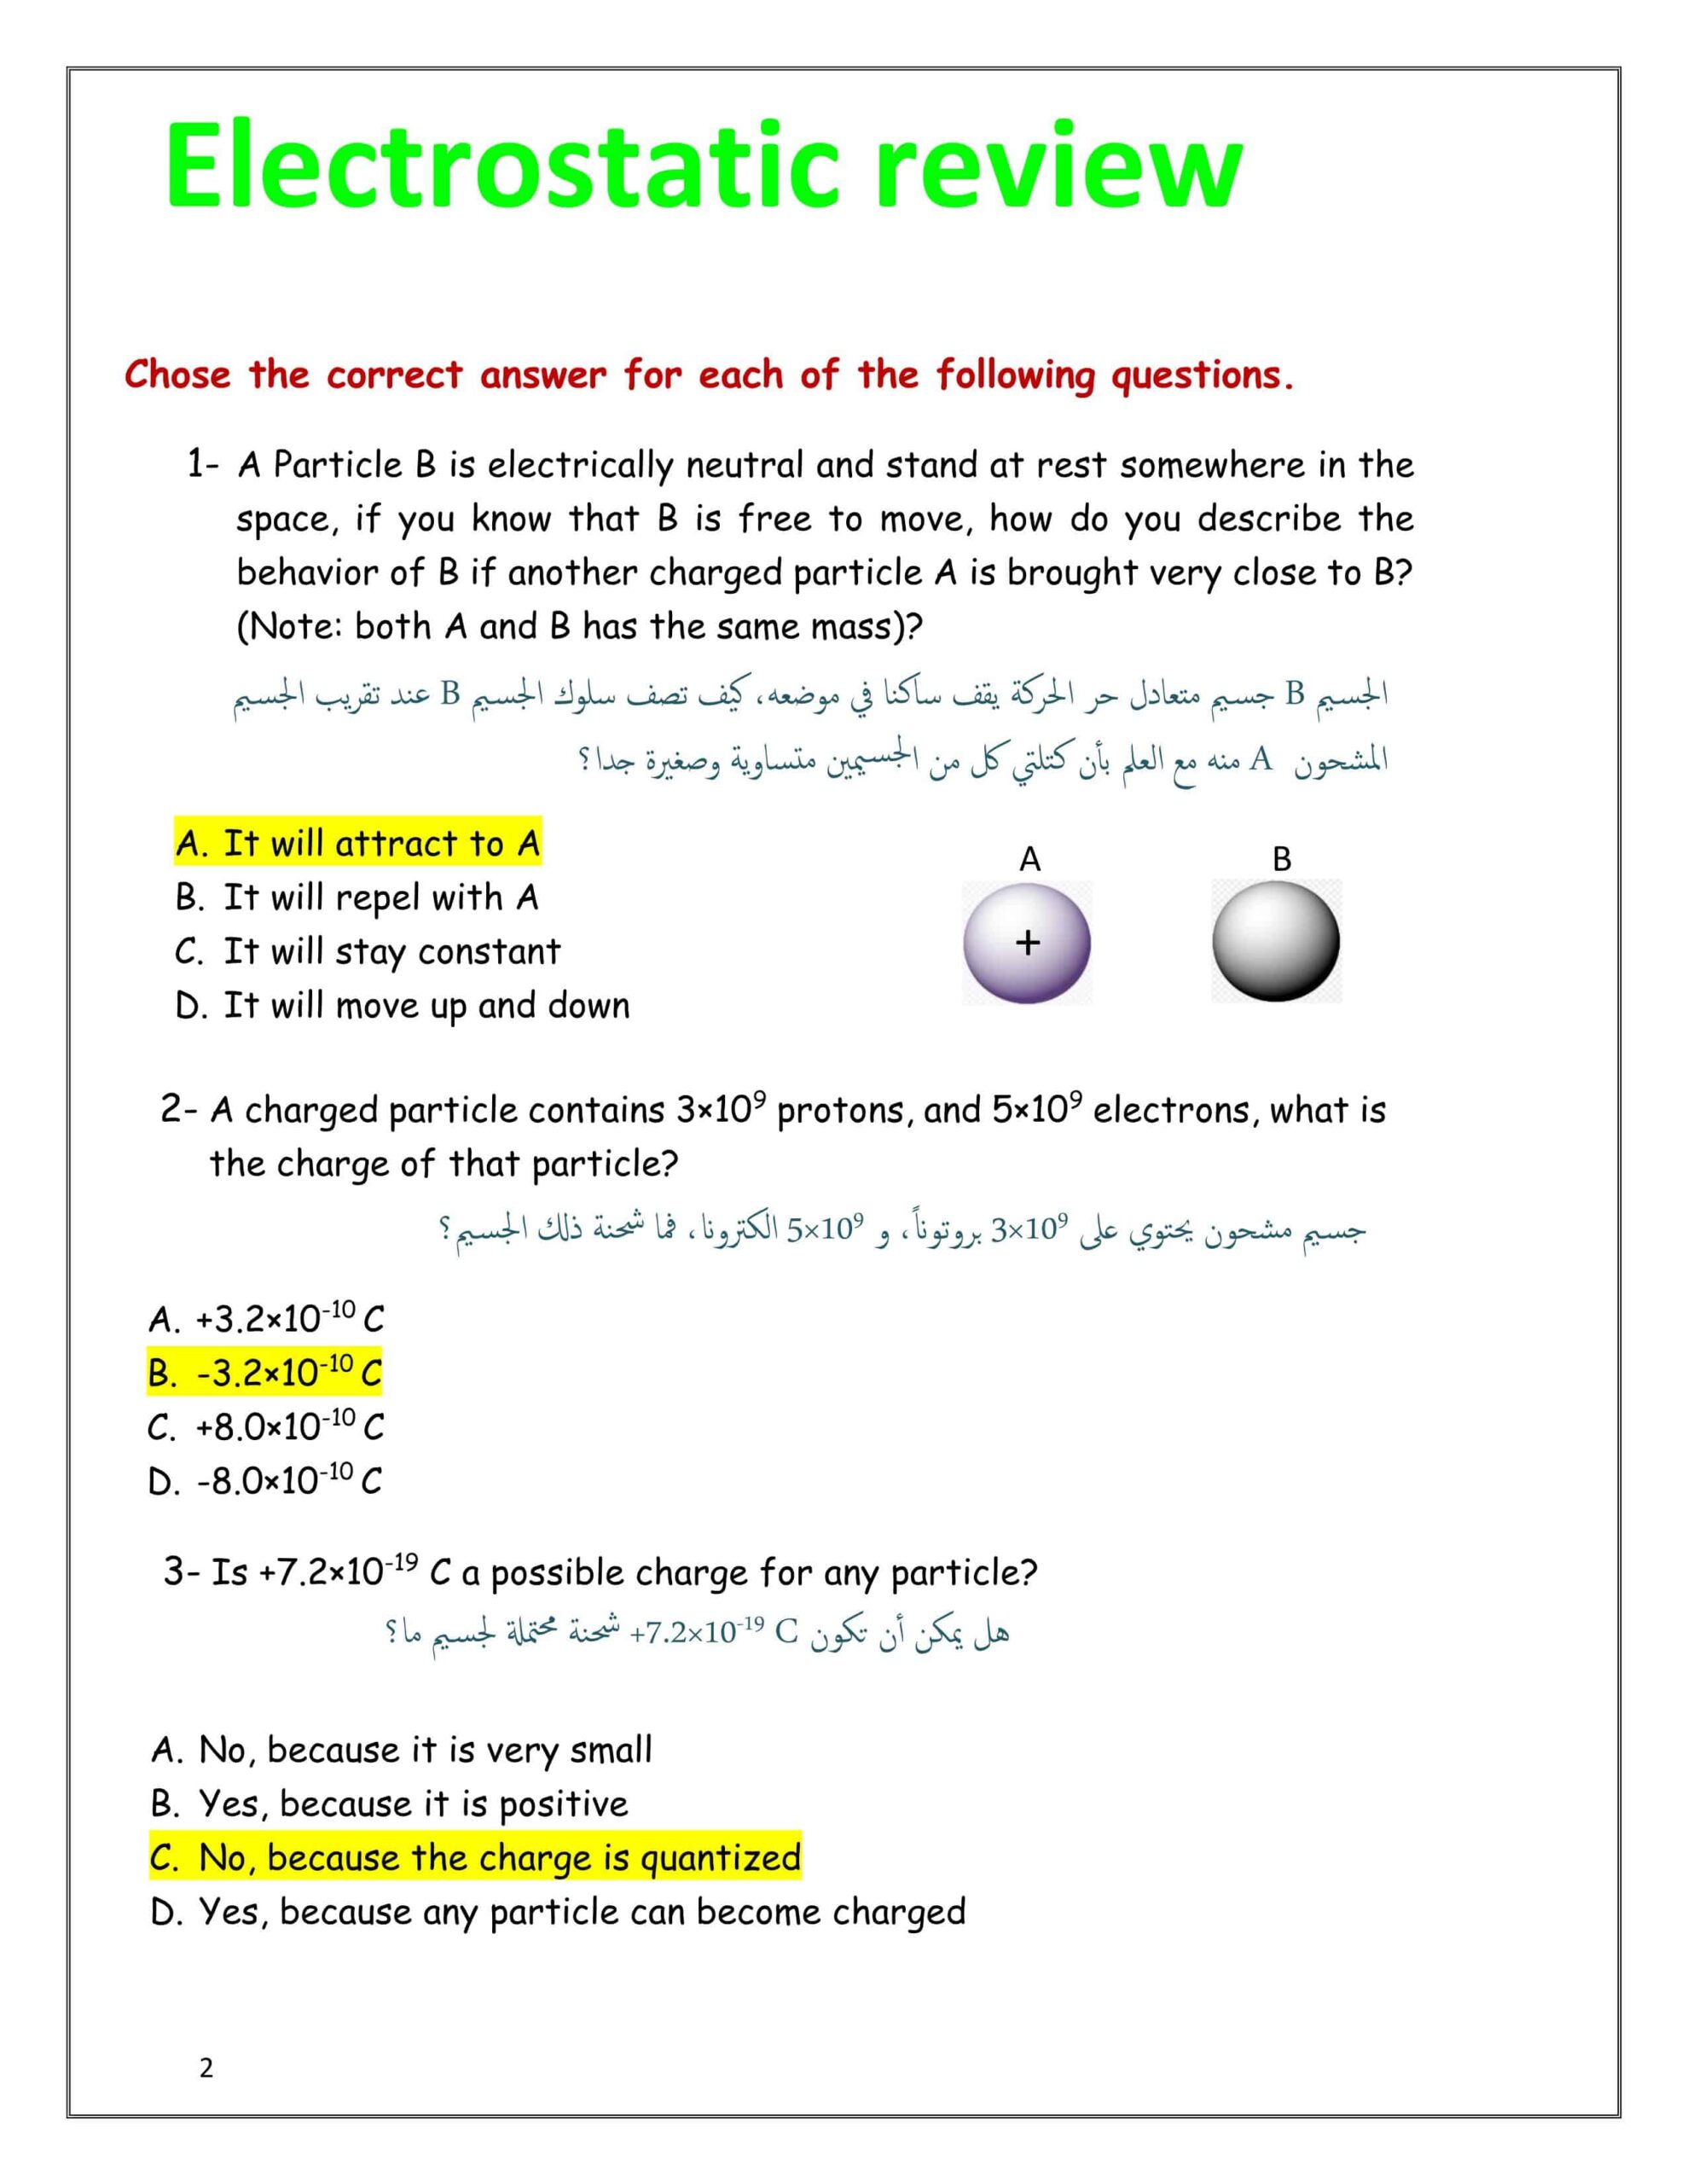 حل أوراق عمل متنوعة بالإنجليزي الفيزياء الصف الثاني عشر